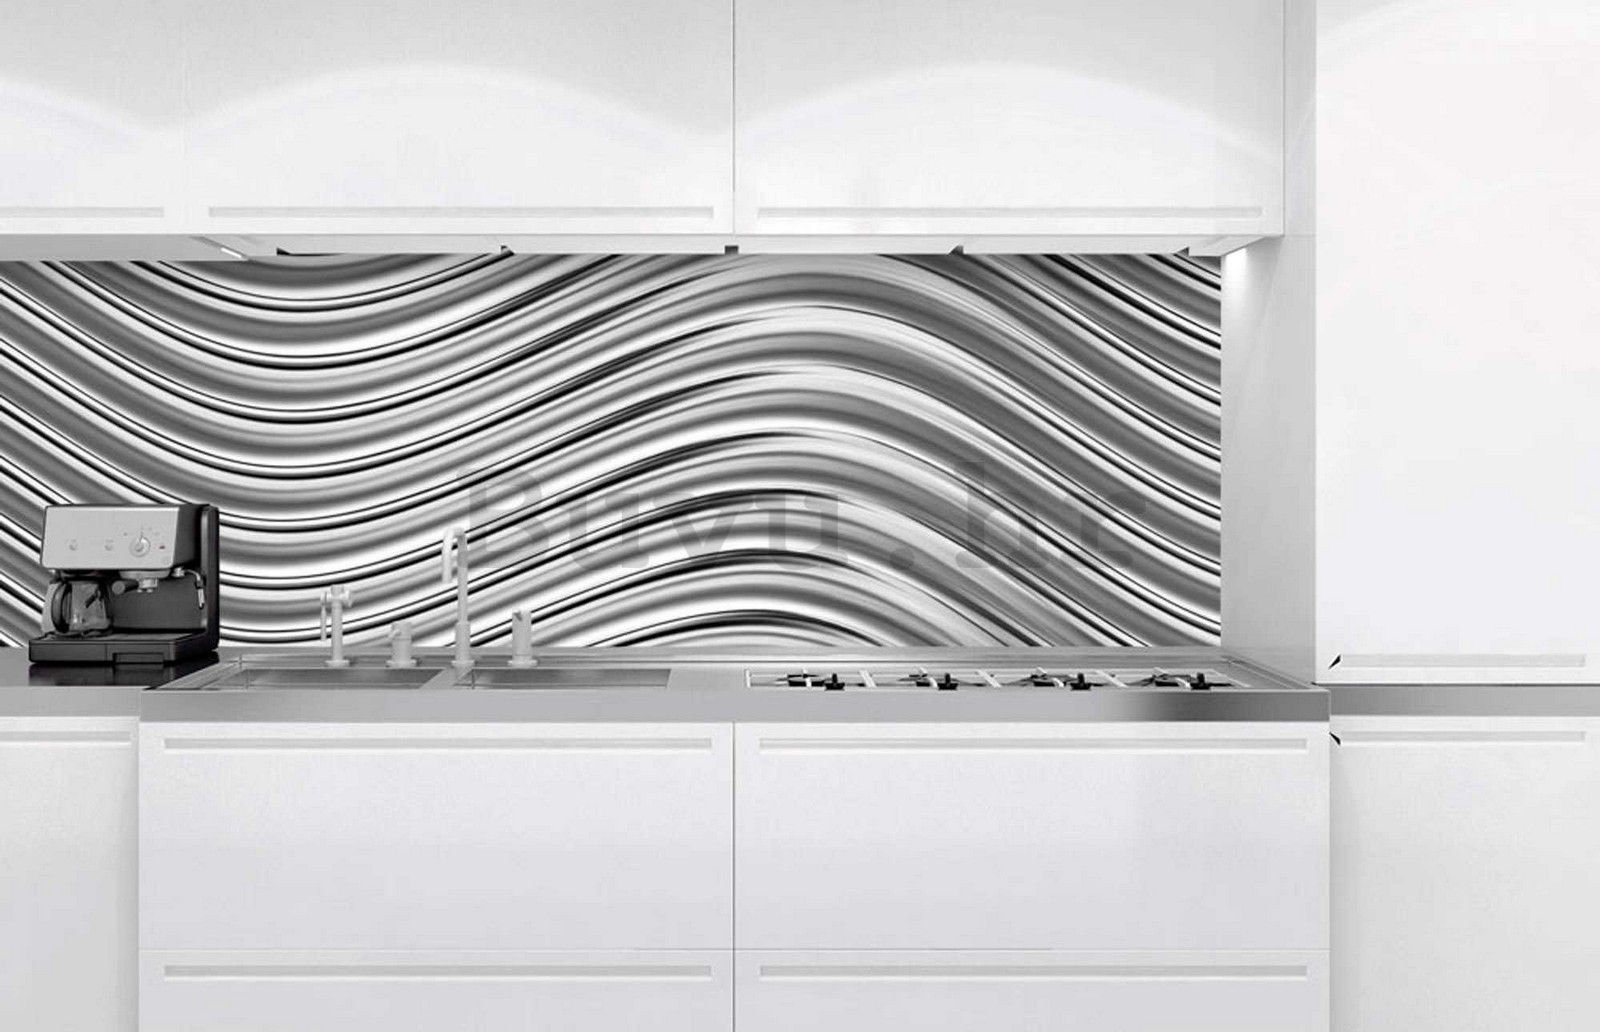 Samoljepljiva periva tapeta za kuhinju - Srebrno mreškanje, 180x60 cm